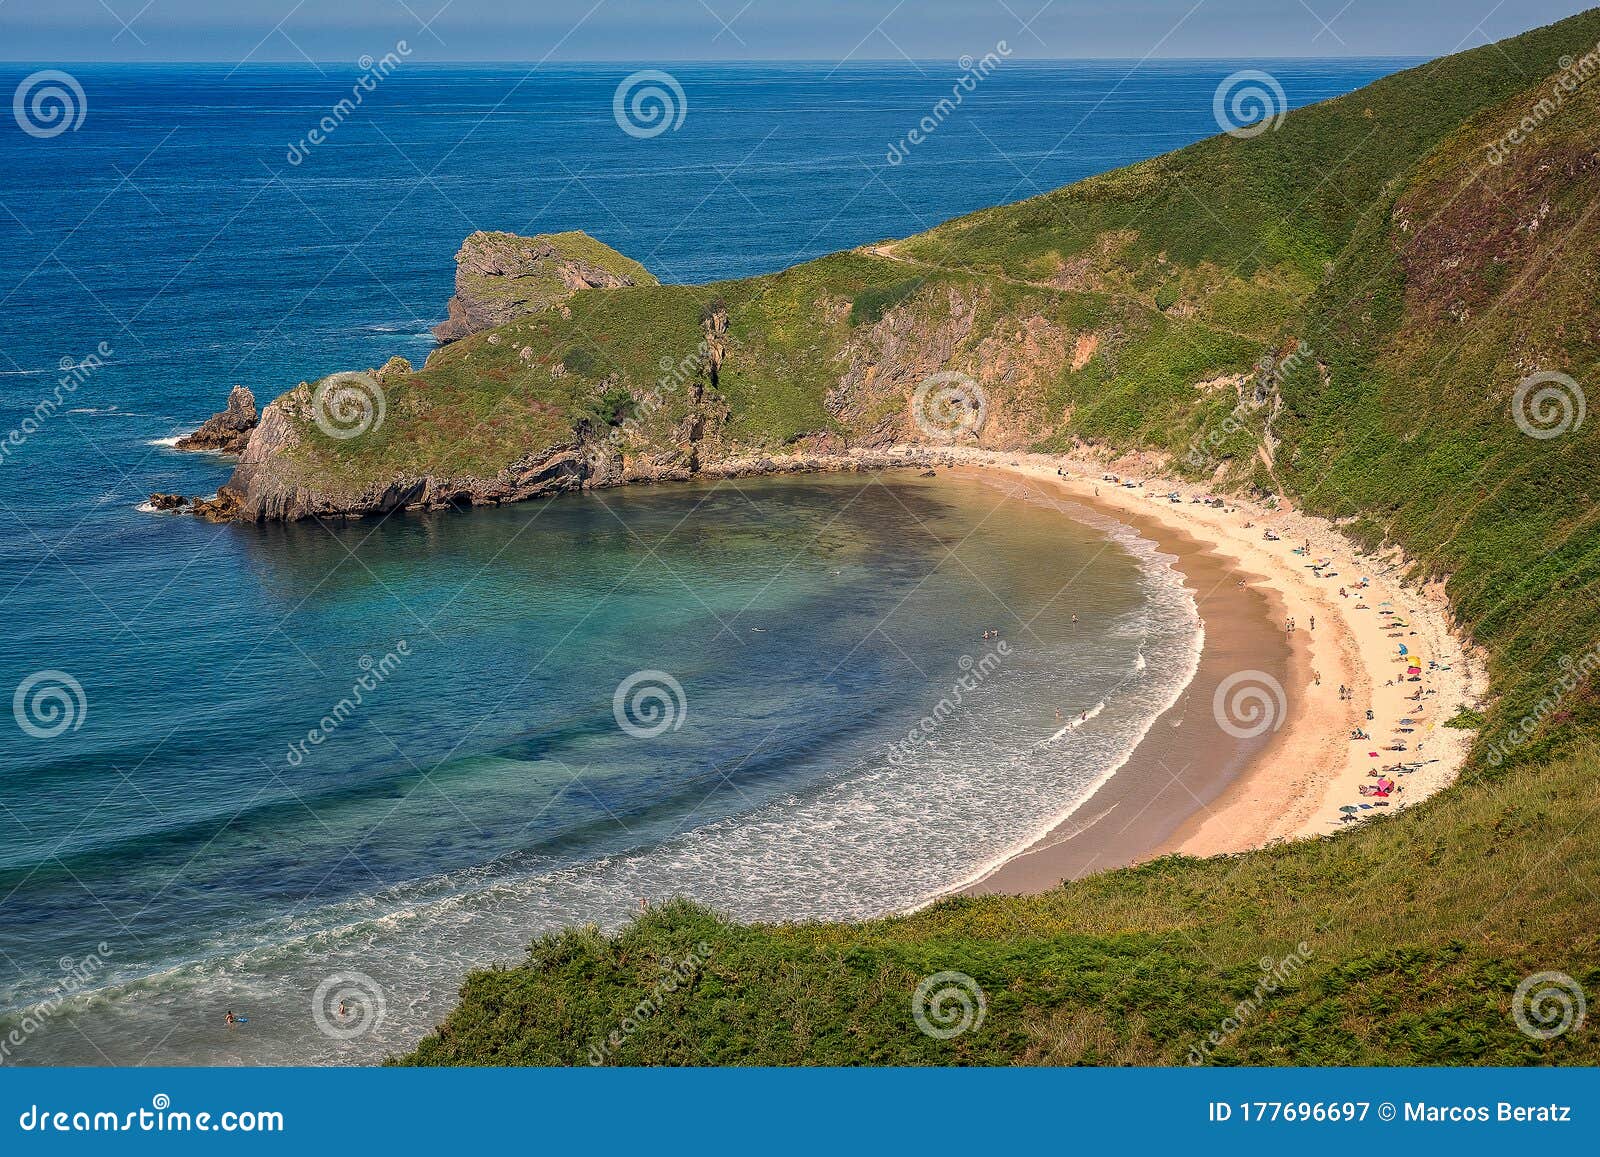 Бесплатное фото нудистский пляж